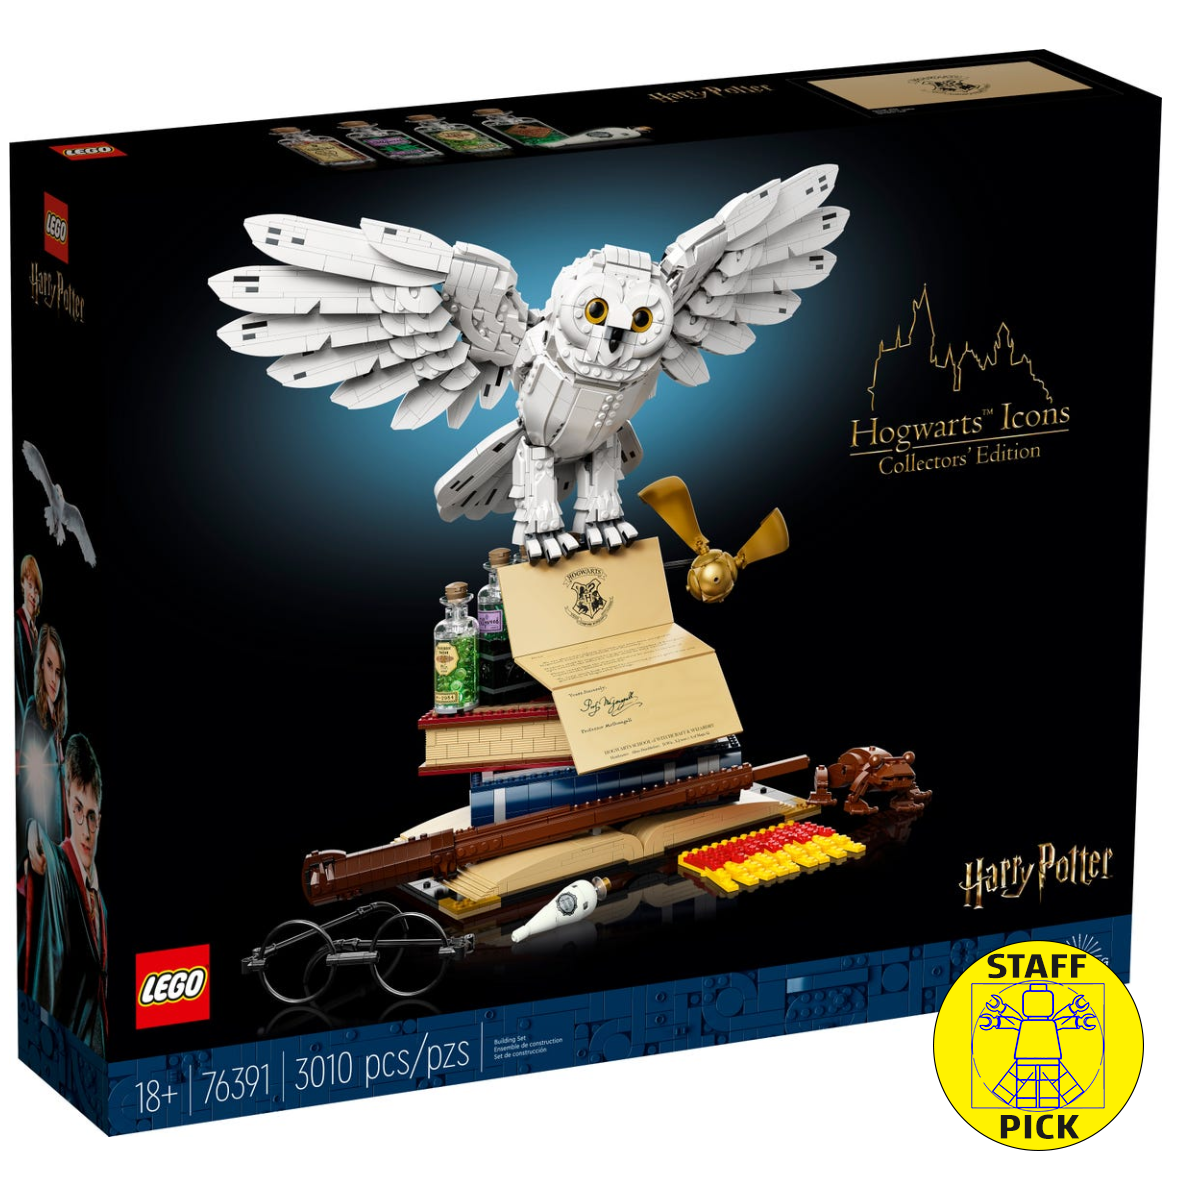 Brickfinder - LEGO Harry Potter Moments Full Details!